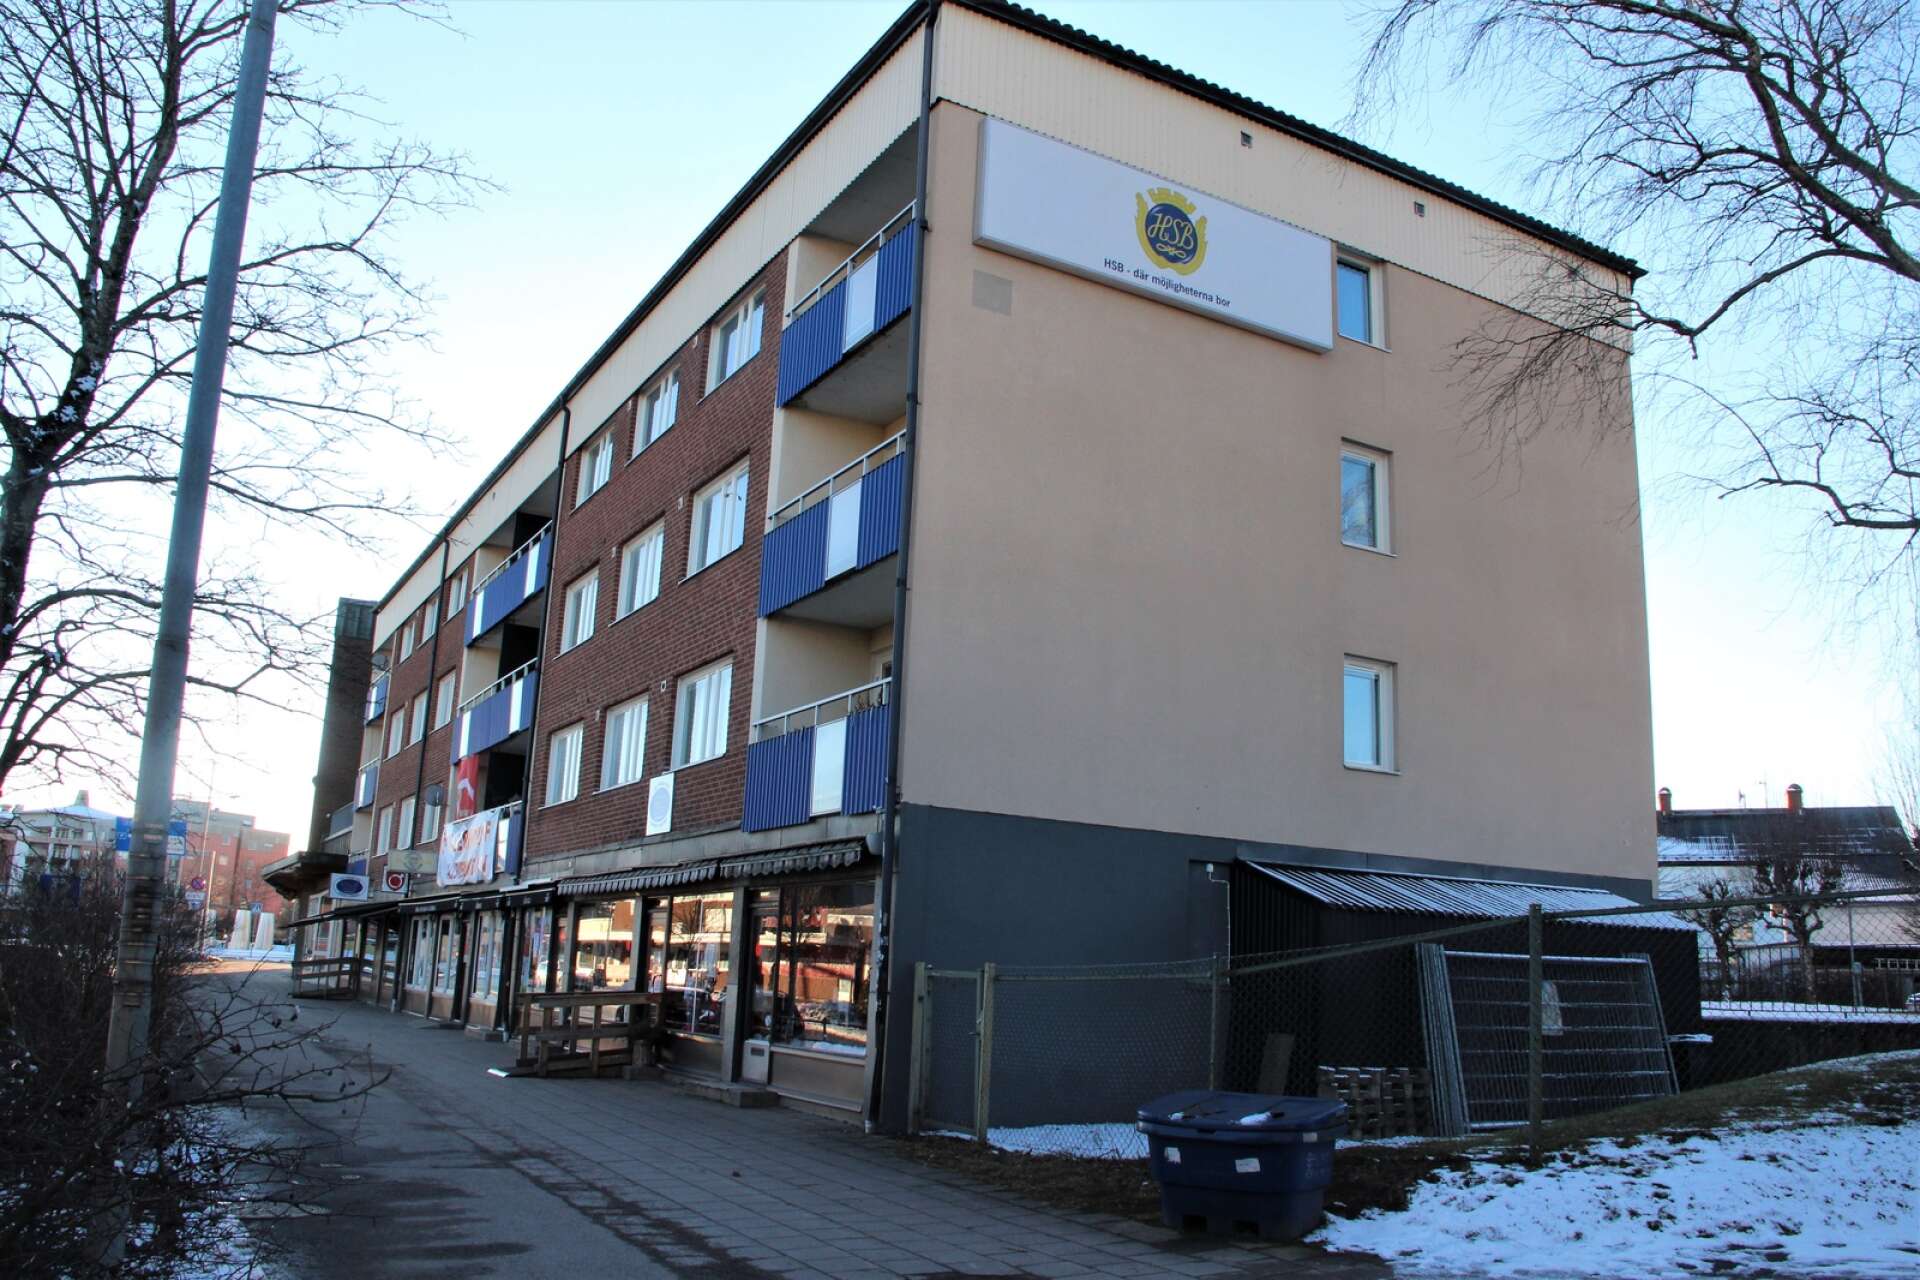 Vid det här huset på Medborgargatan låg också en kemtvätt och det är en av fem i centrala Degerfors som finns med i kartläggningen.